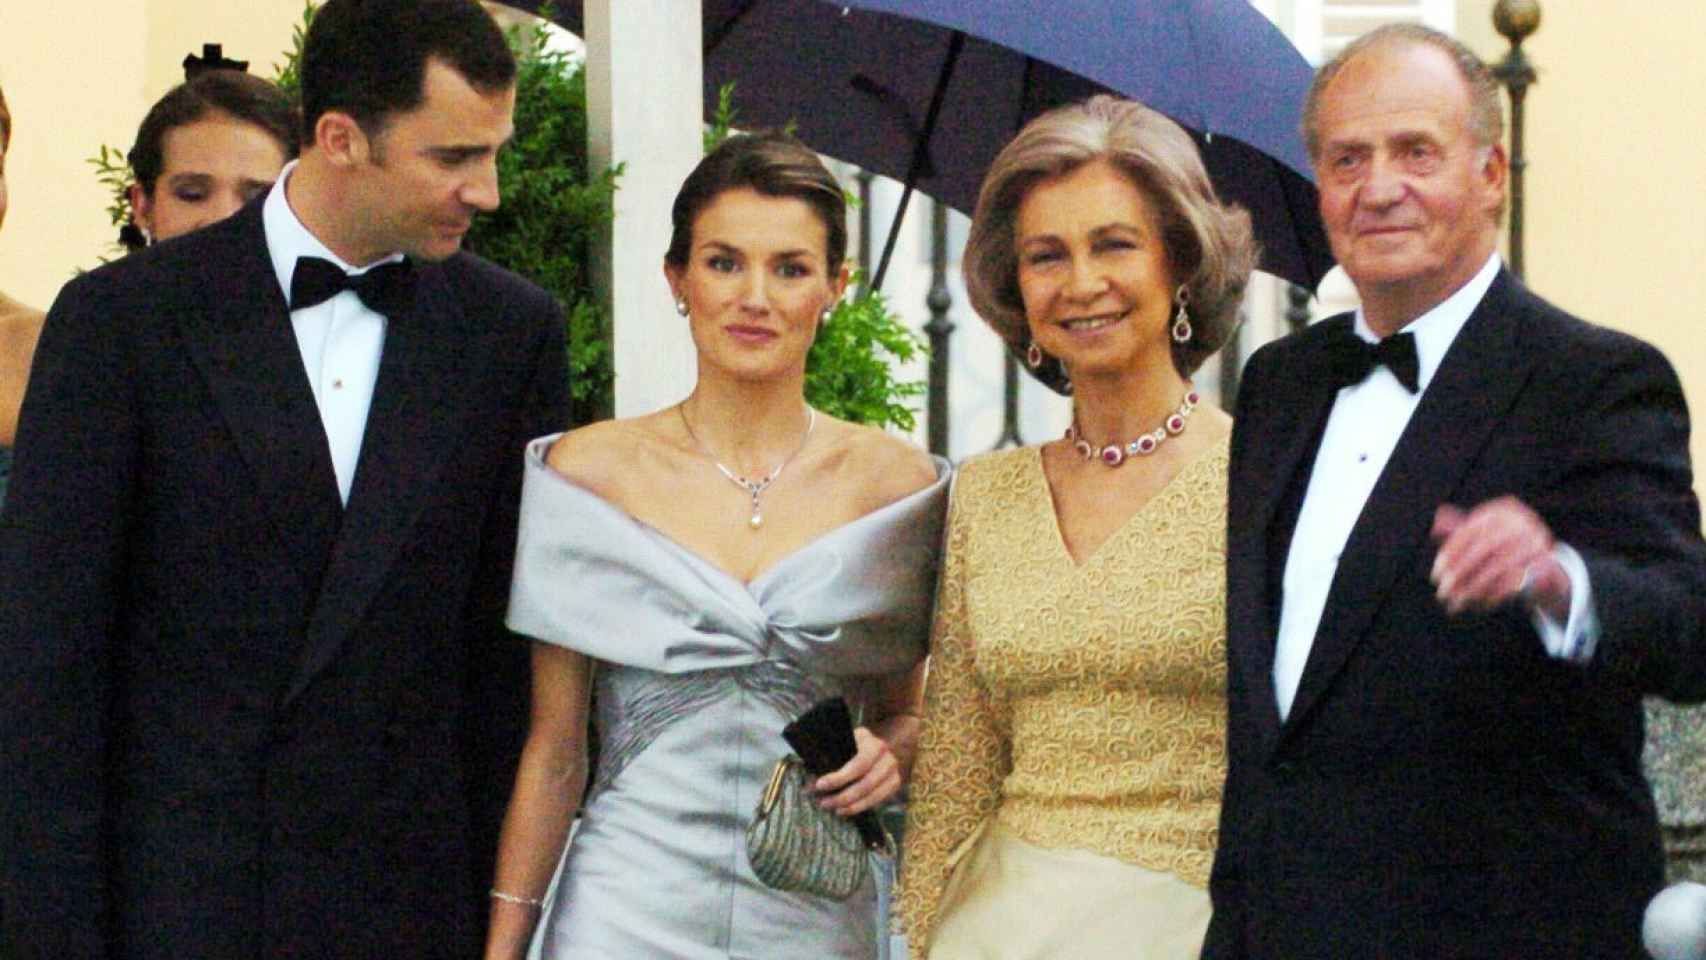 El príncipe de Asturias, Letizia Ortiz, la reina Sofía y el rey Juan Carlos en la cena previa a la boda real.